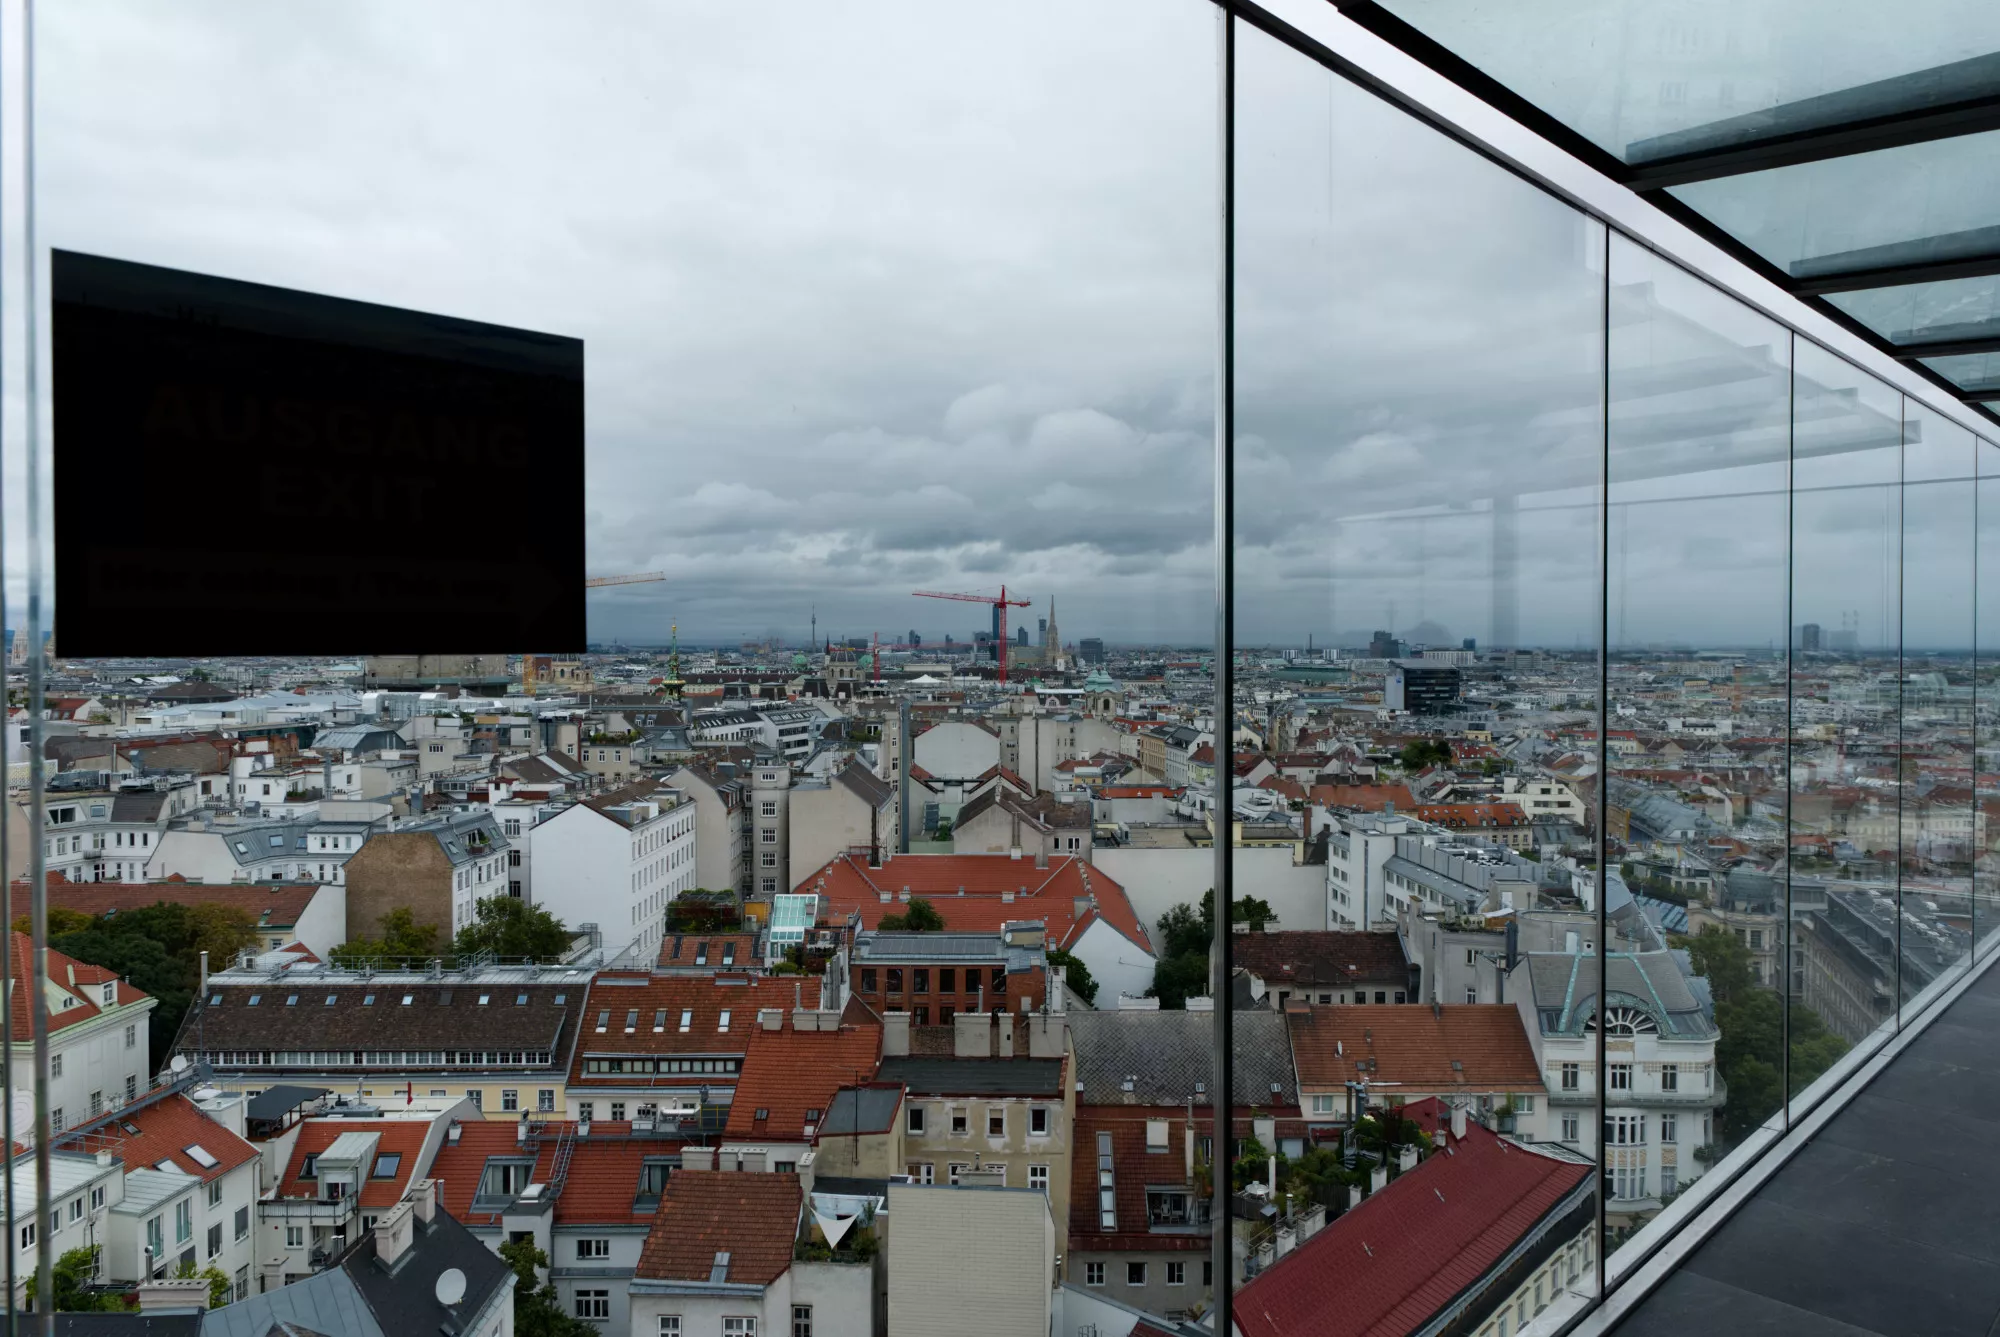 Dom mora Viedeň - výhľad zo strechy (©miribord)